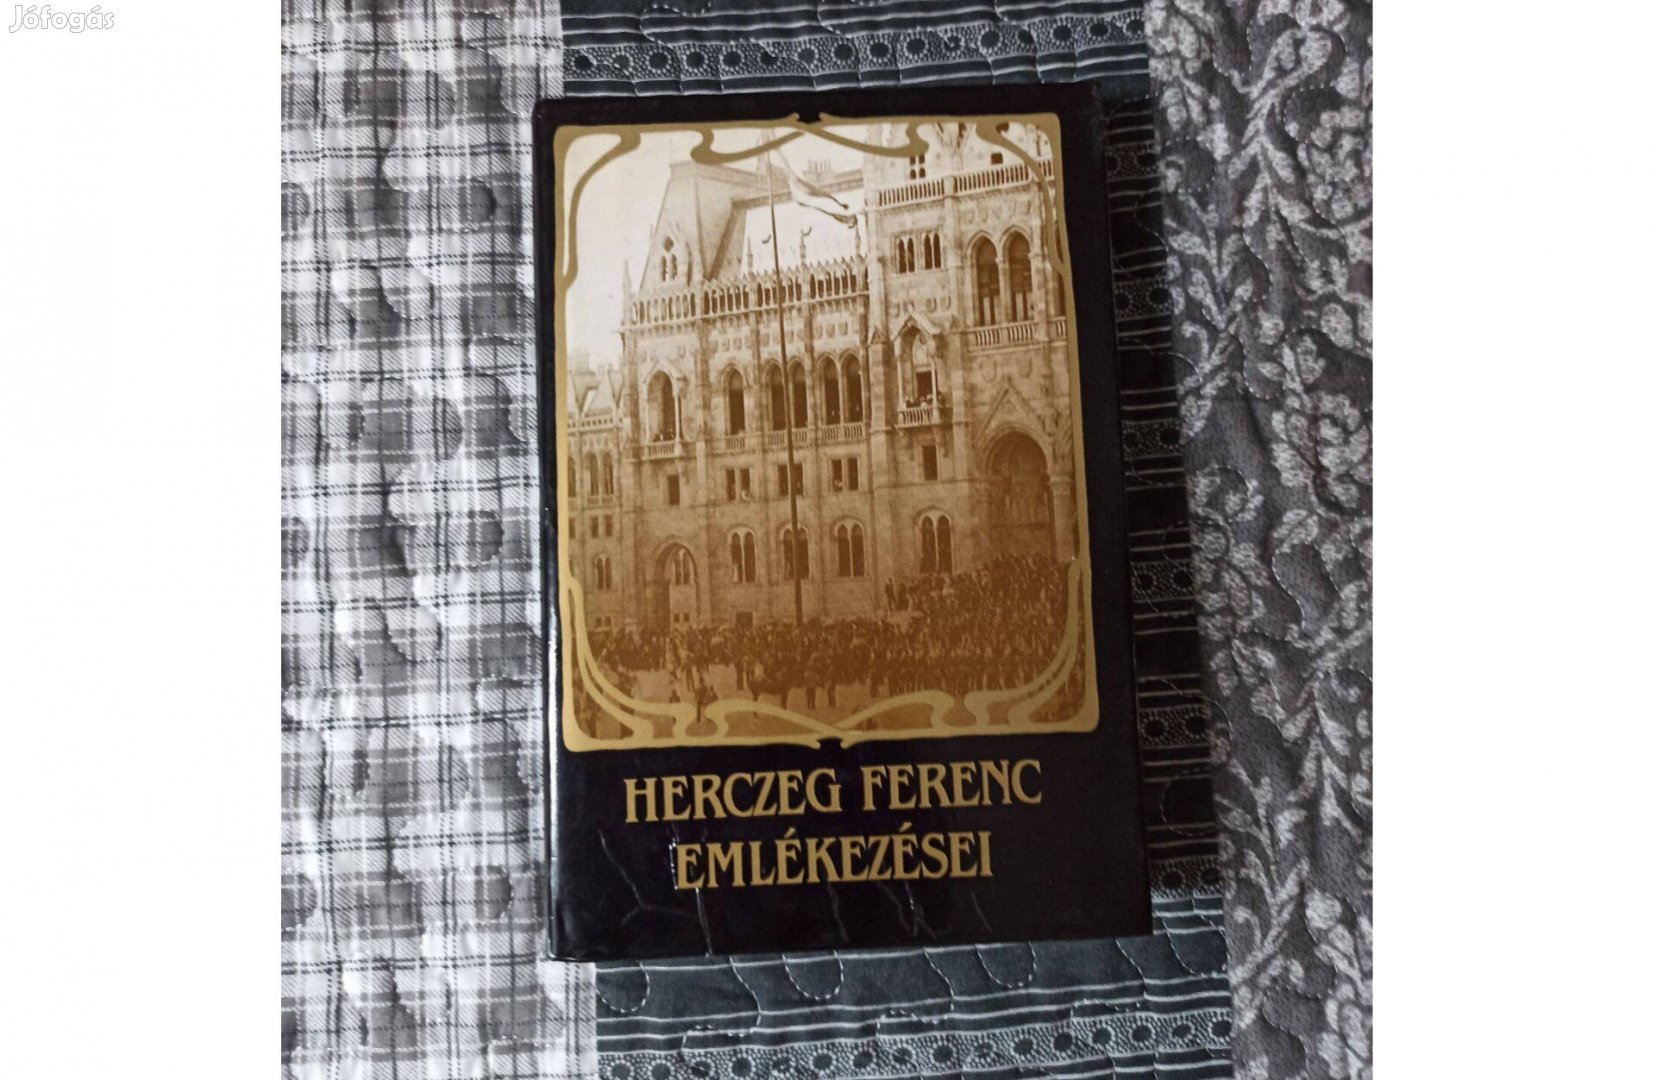 Herczeg Ferenc: Emlékezési és a Pro libertate című könyvek